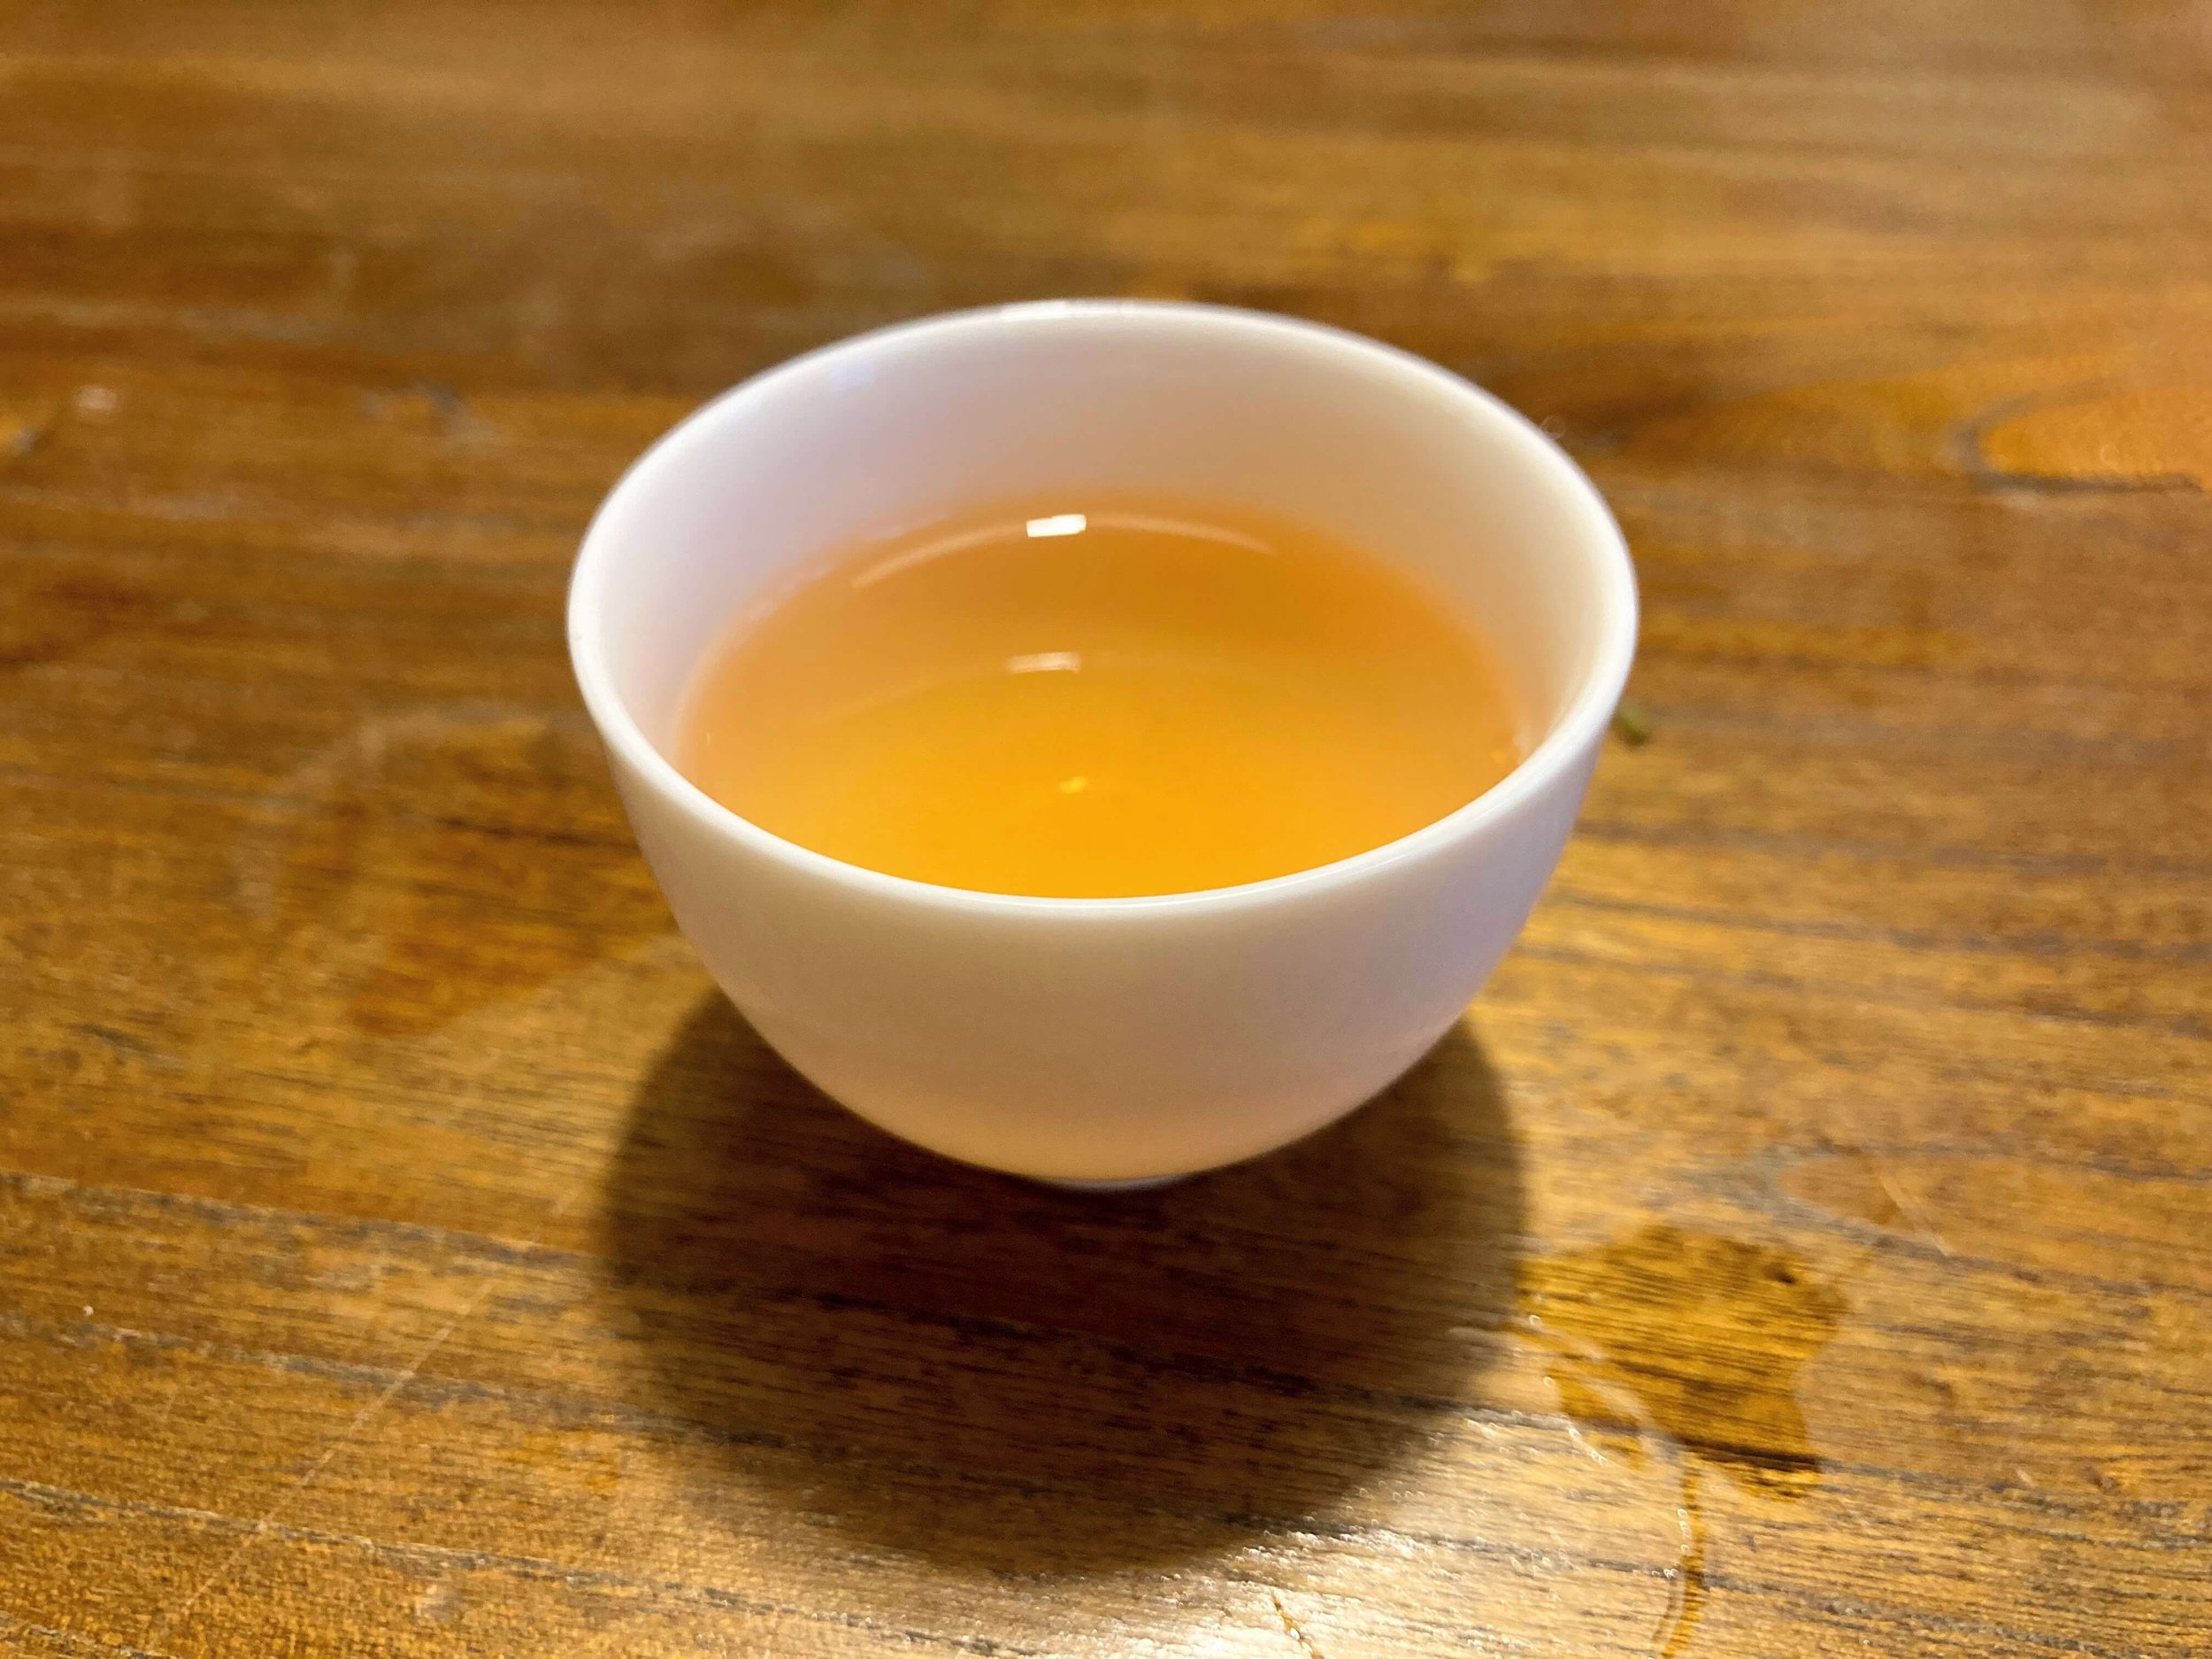 Xing Ren Xiang (Almond Fragrance), liquor